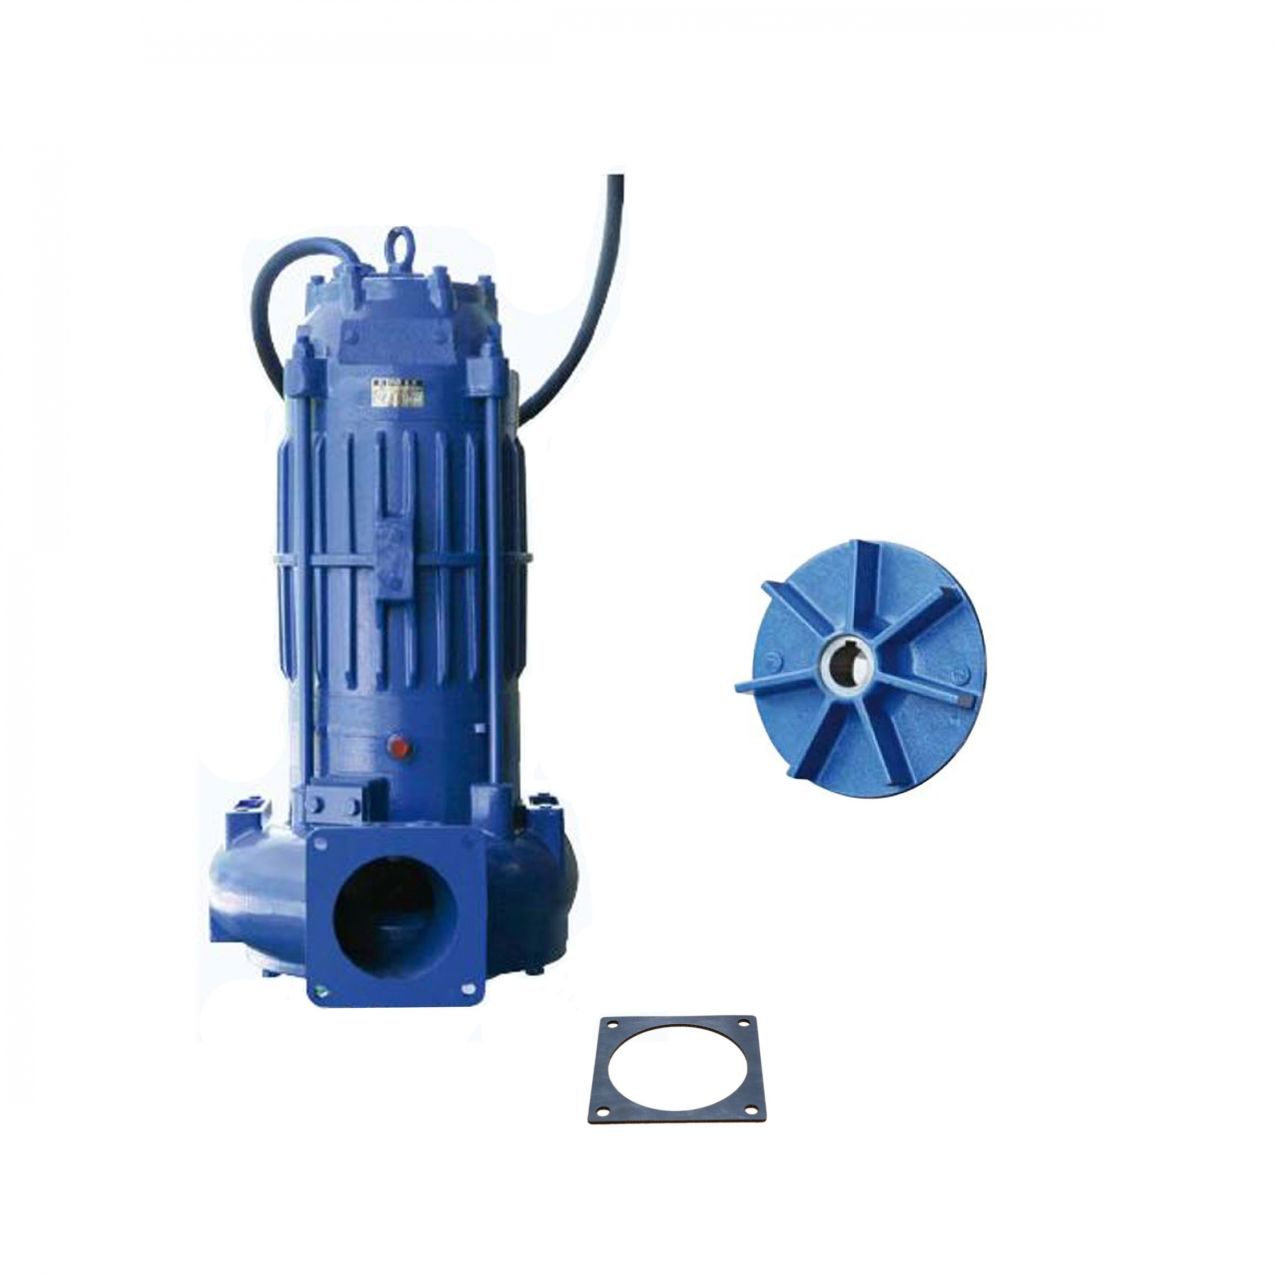 example of a vortex impeller pump